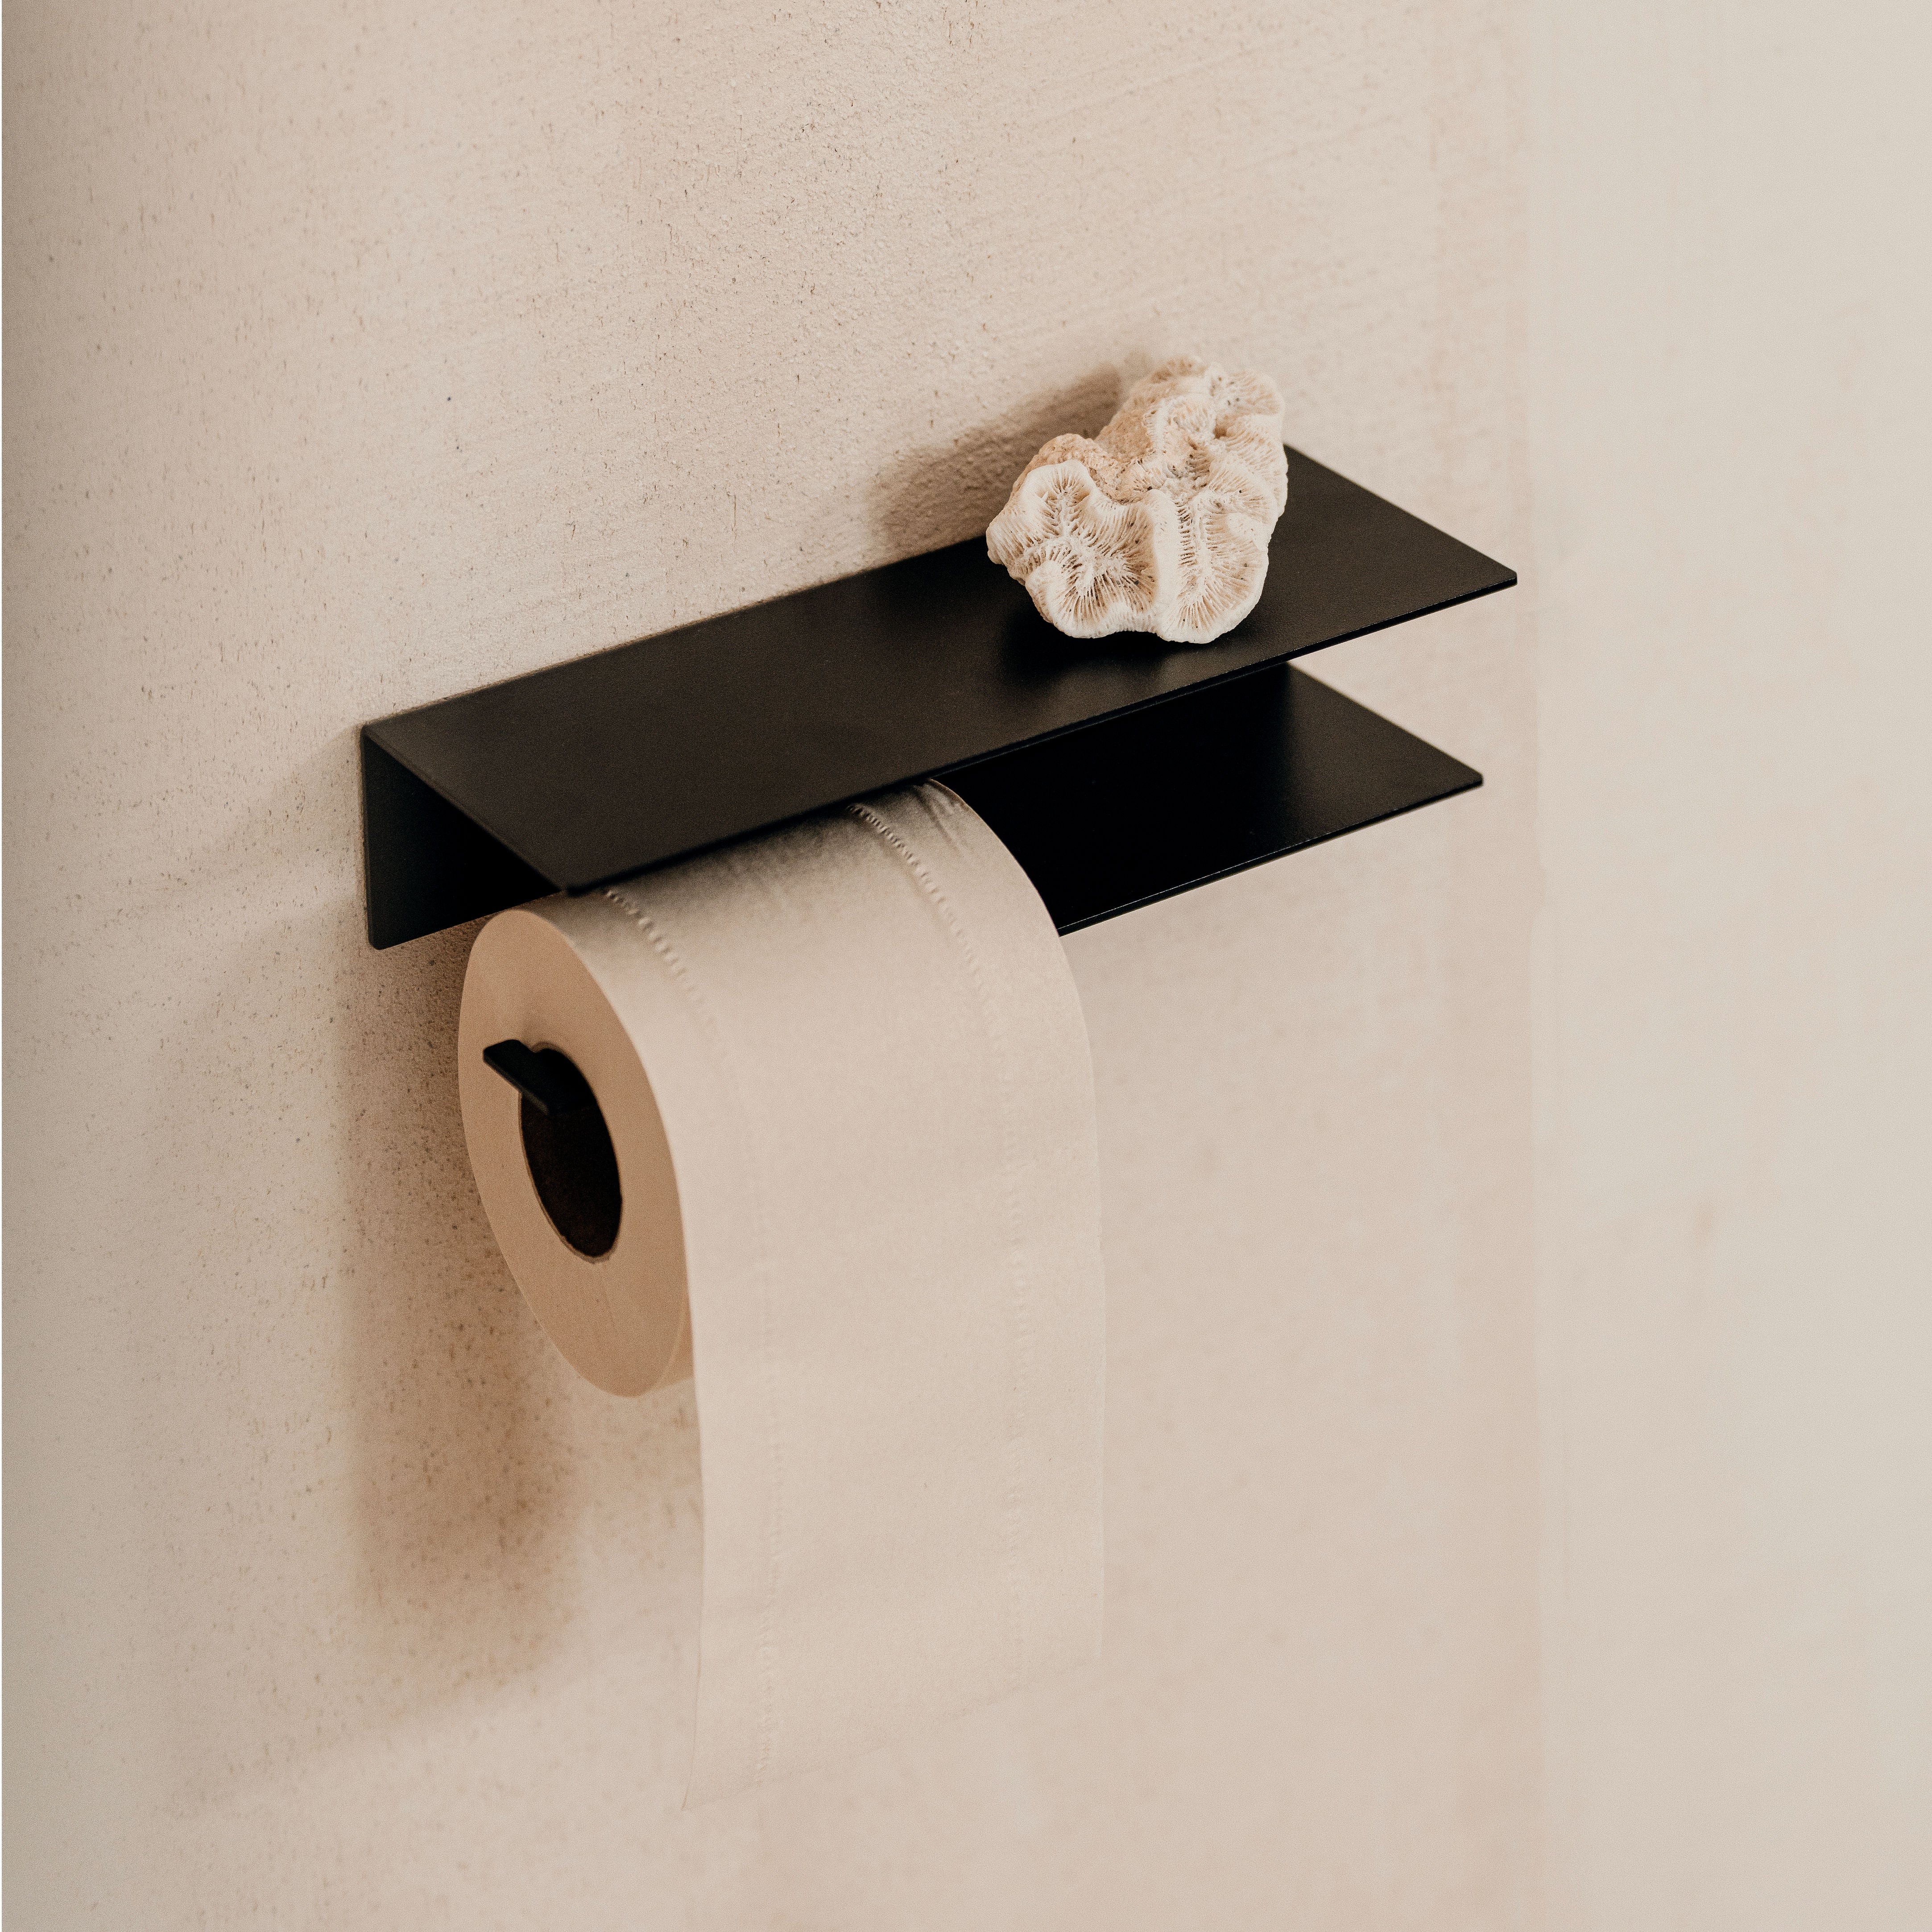 Serviteur WC Gedy ARTU COMBO Porte brosse WC et Papier Toilette Noir Mat  000011321400000